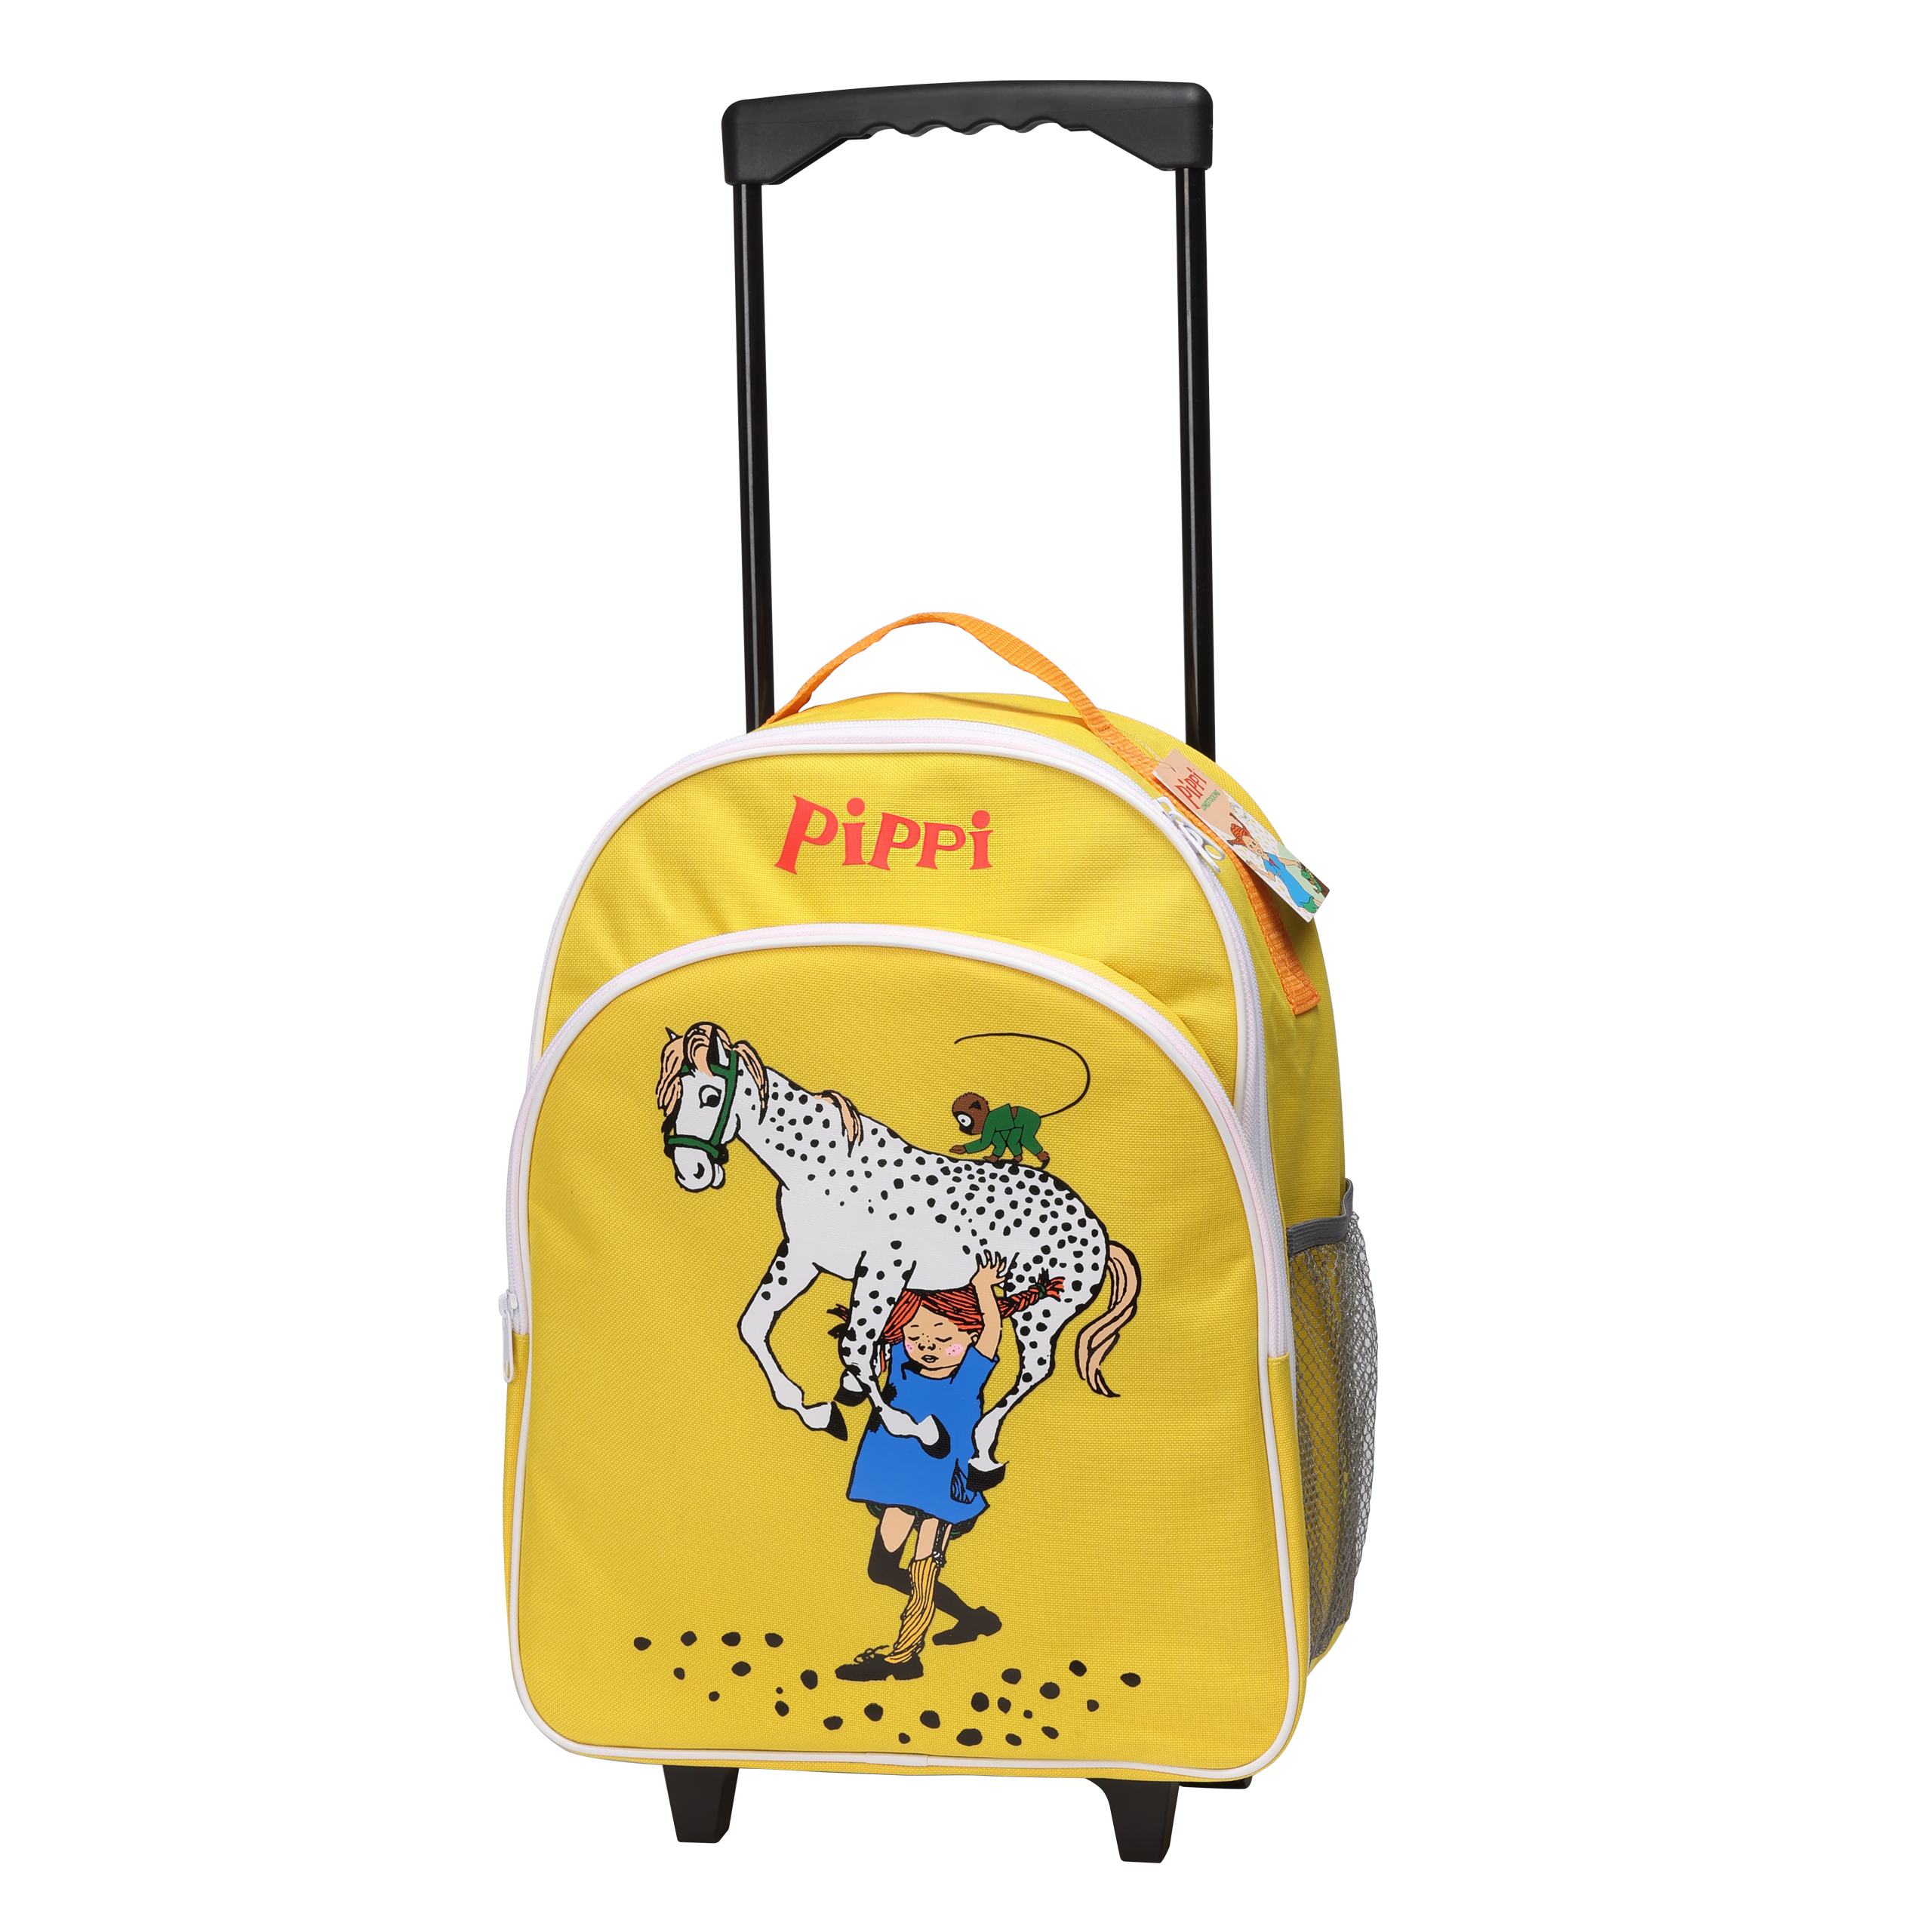 Pippi Långstrump pippi barnväska resväska gul